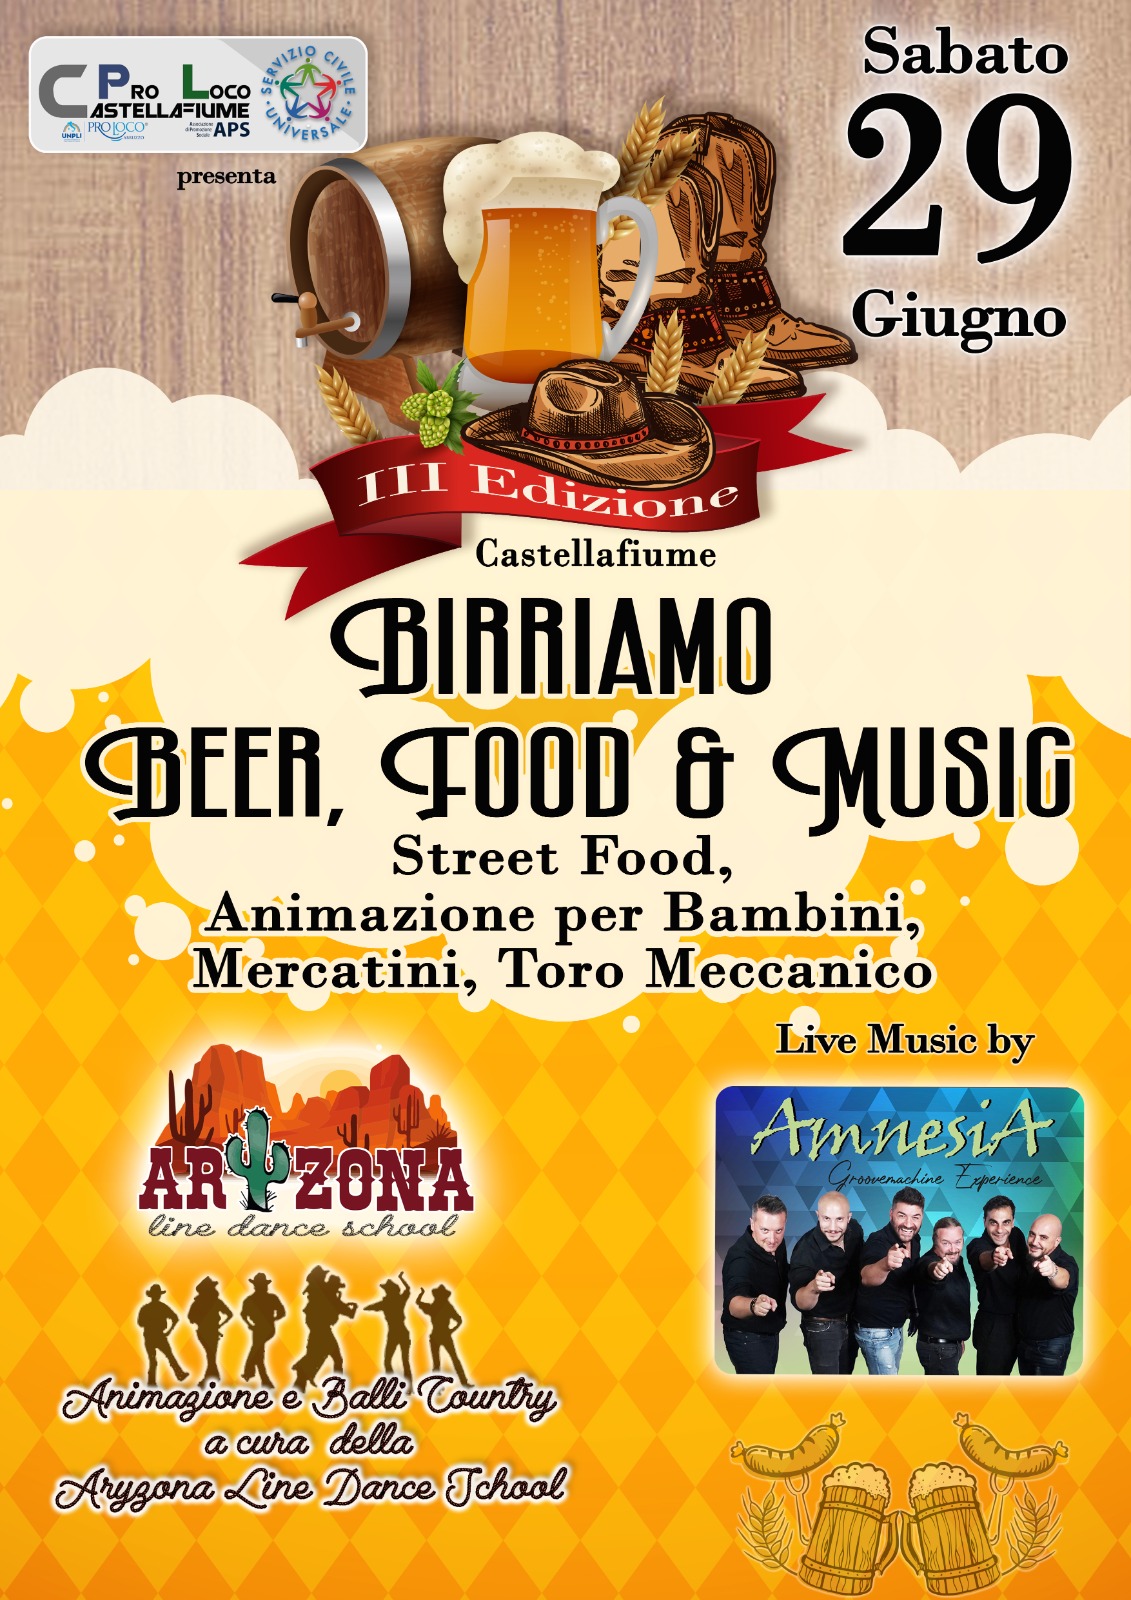 BIRRIAMO 3 edizione - Beer, Food & Music